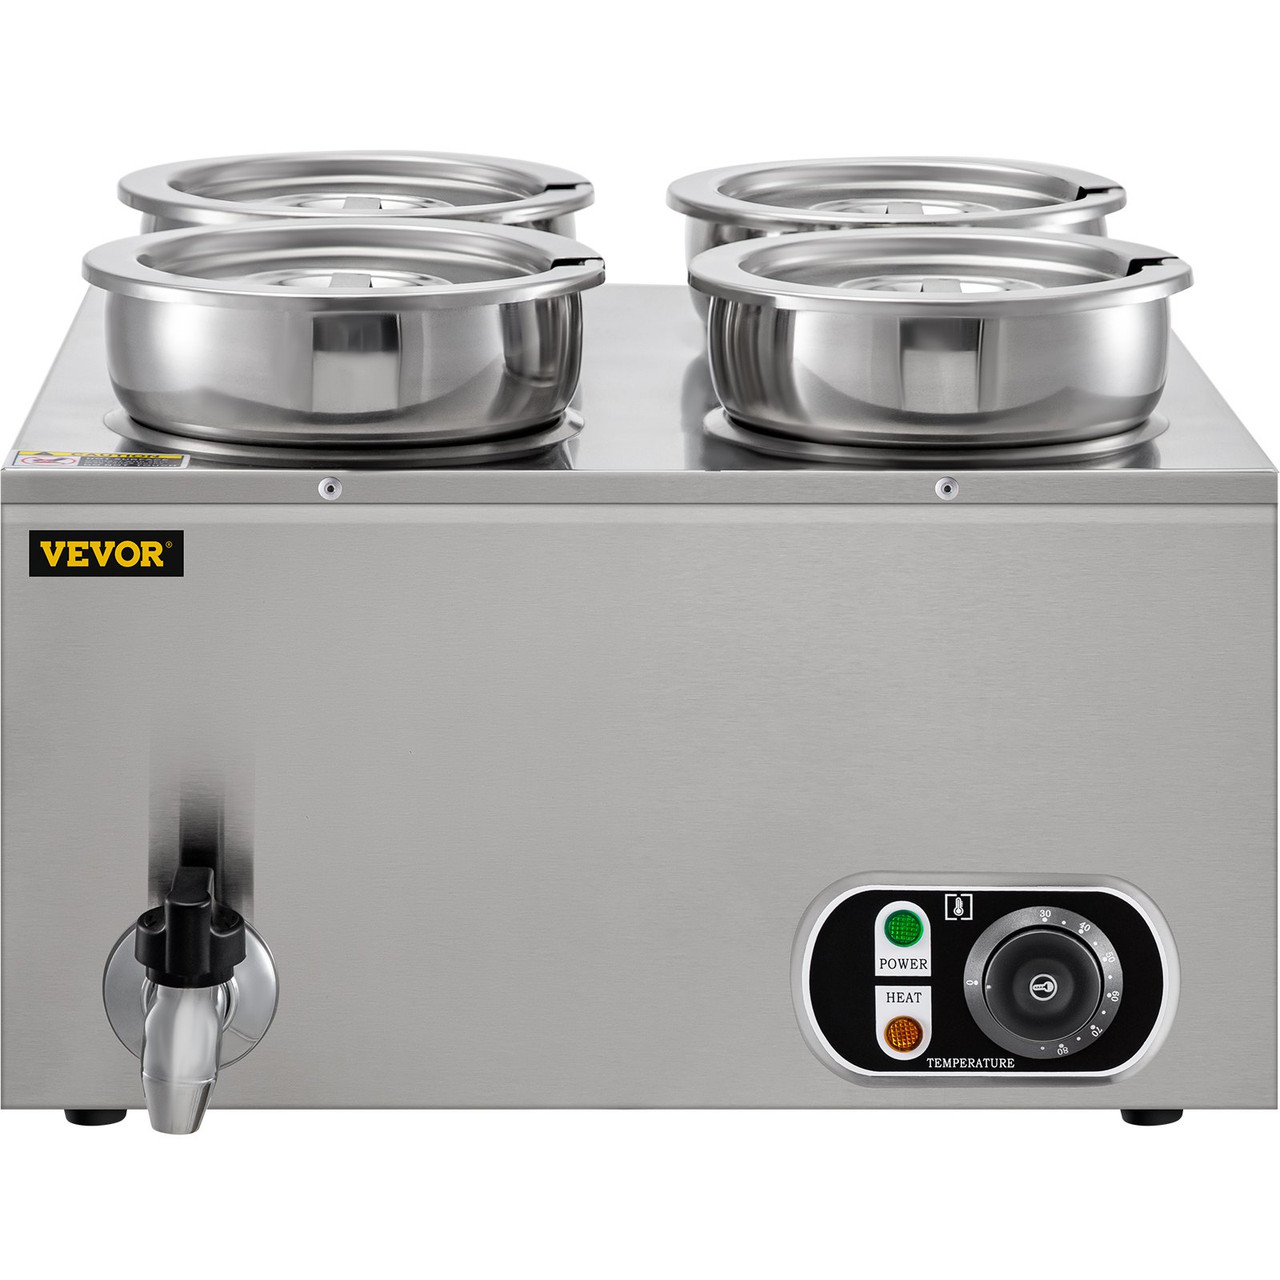 VEVOR 110V Commercial Soup Warmer 29.6 Qt Capacity, 1500W